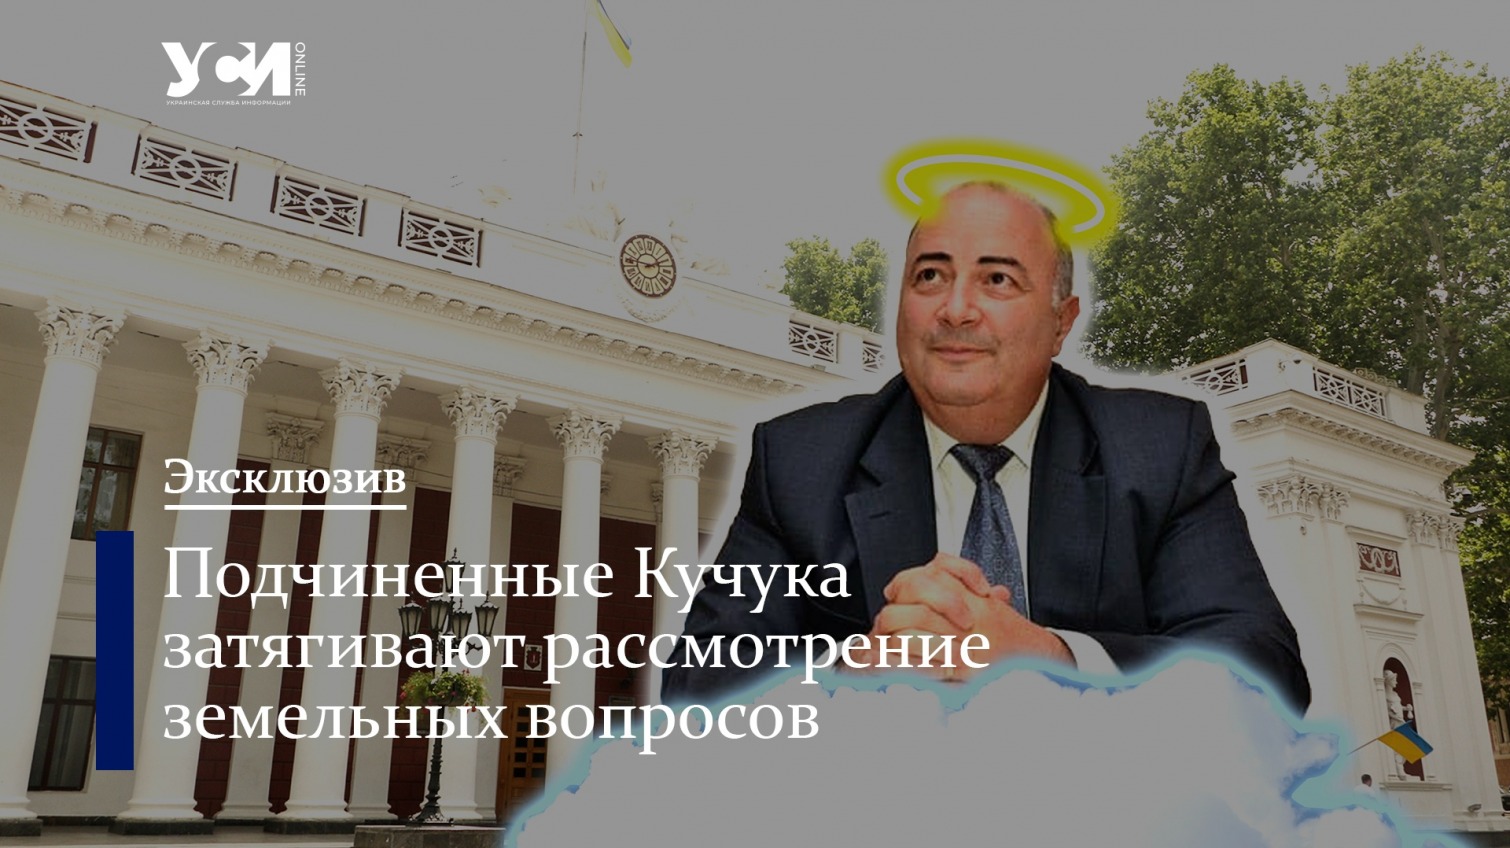 Одесская мэрия незаконно затягивает рассмотрение земельных вопросов «фото»